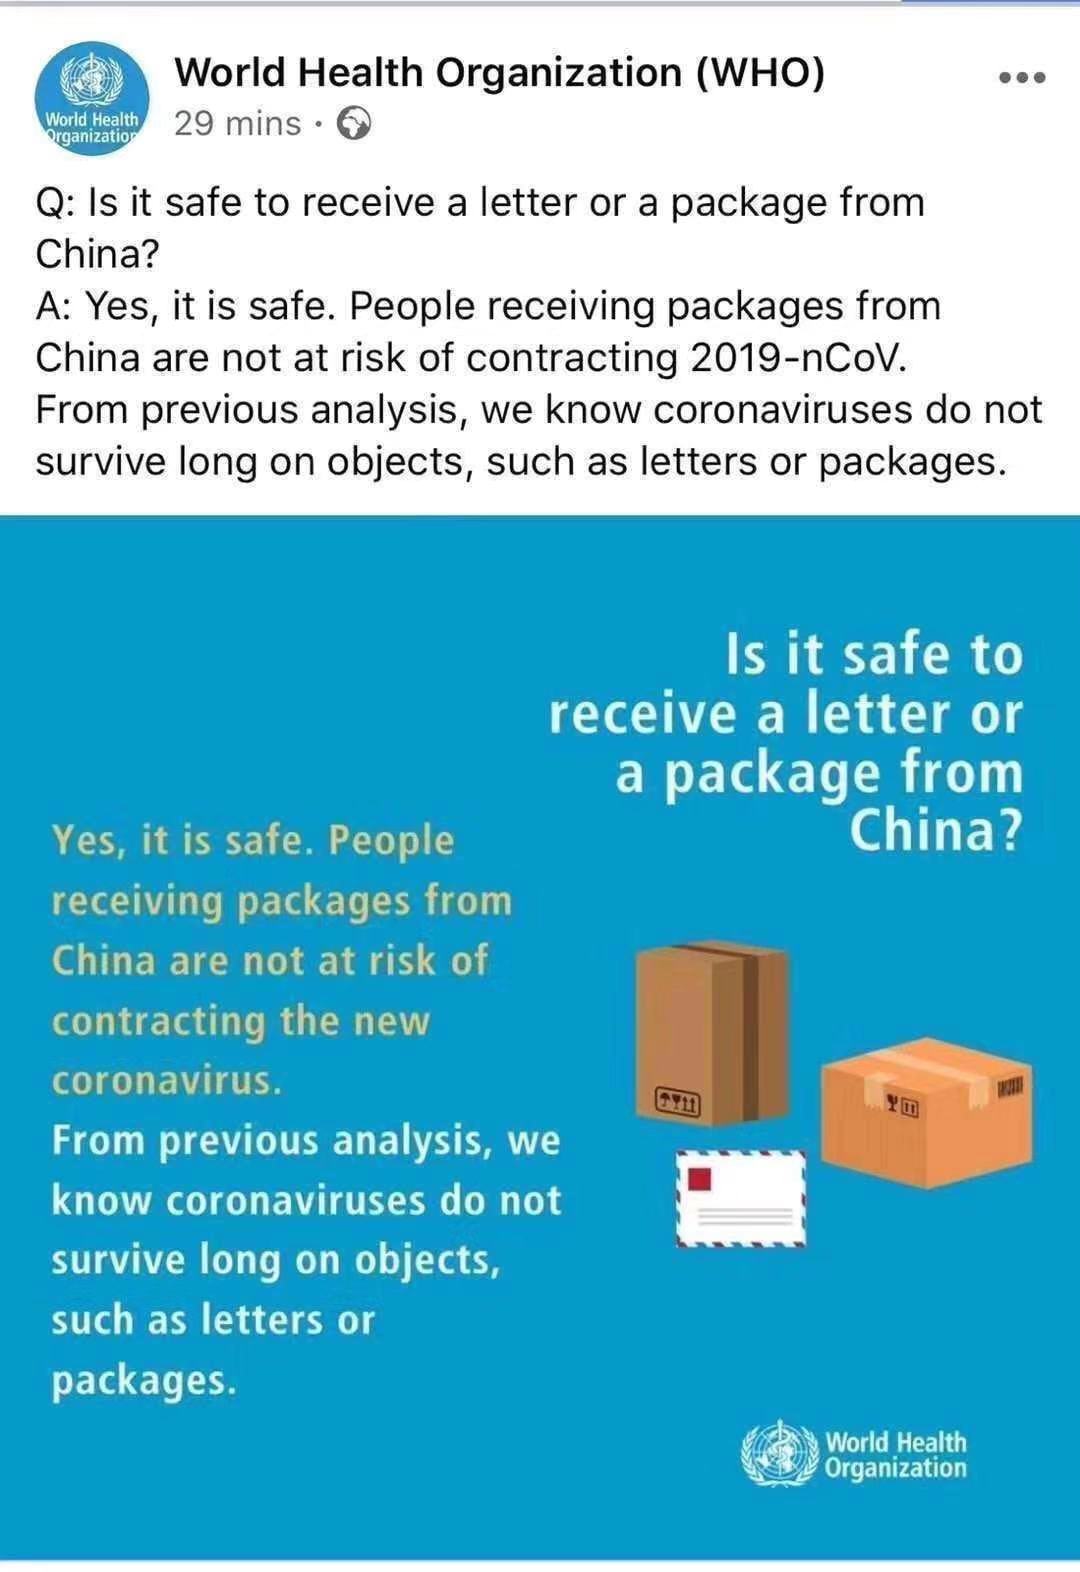 ¿Es seguro recibir una carta o un paquete desde China?
        